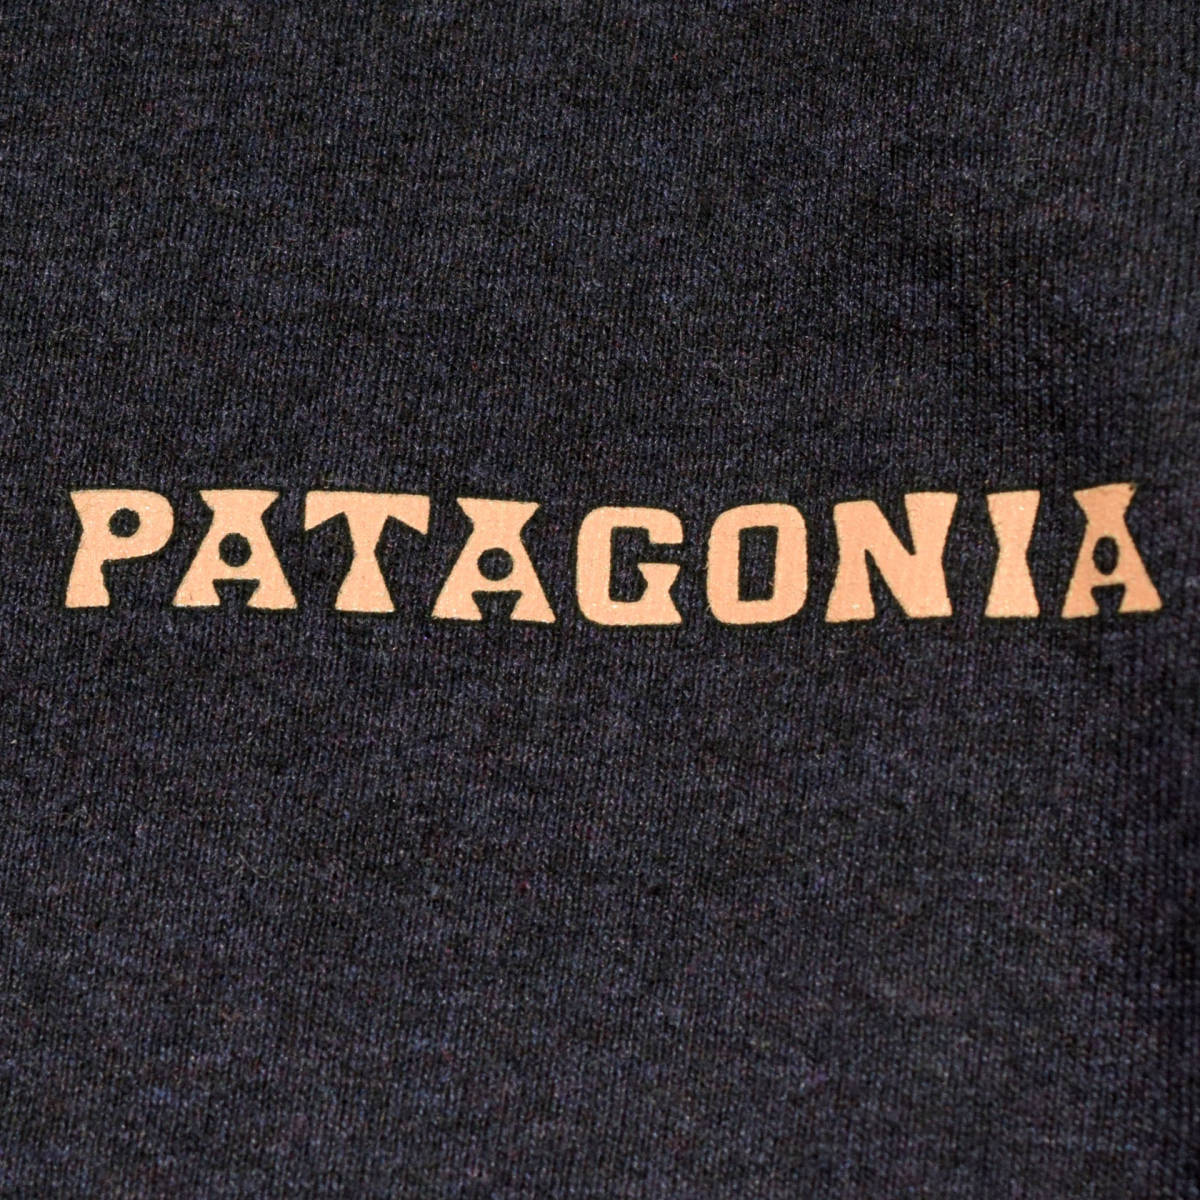 メンズS M 美品！送料無料！Patagonia パタゴニア 2020年製 LONG SLEEVE SUMMIT ROAD RESPONSIBILI TEE 38519 アウトドア ロンT Tシャツ P6